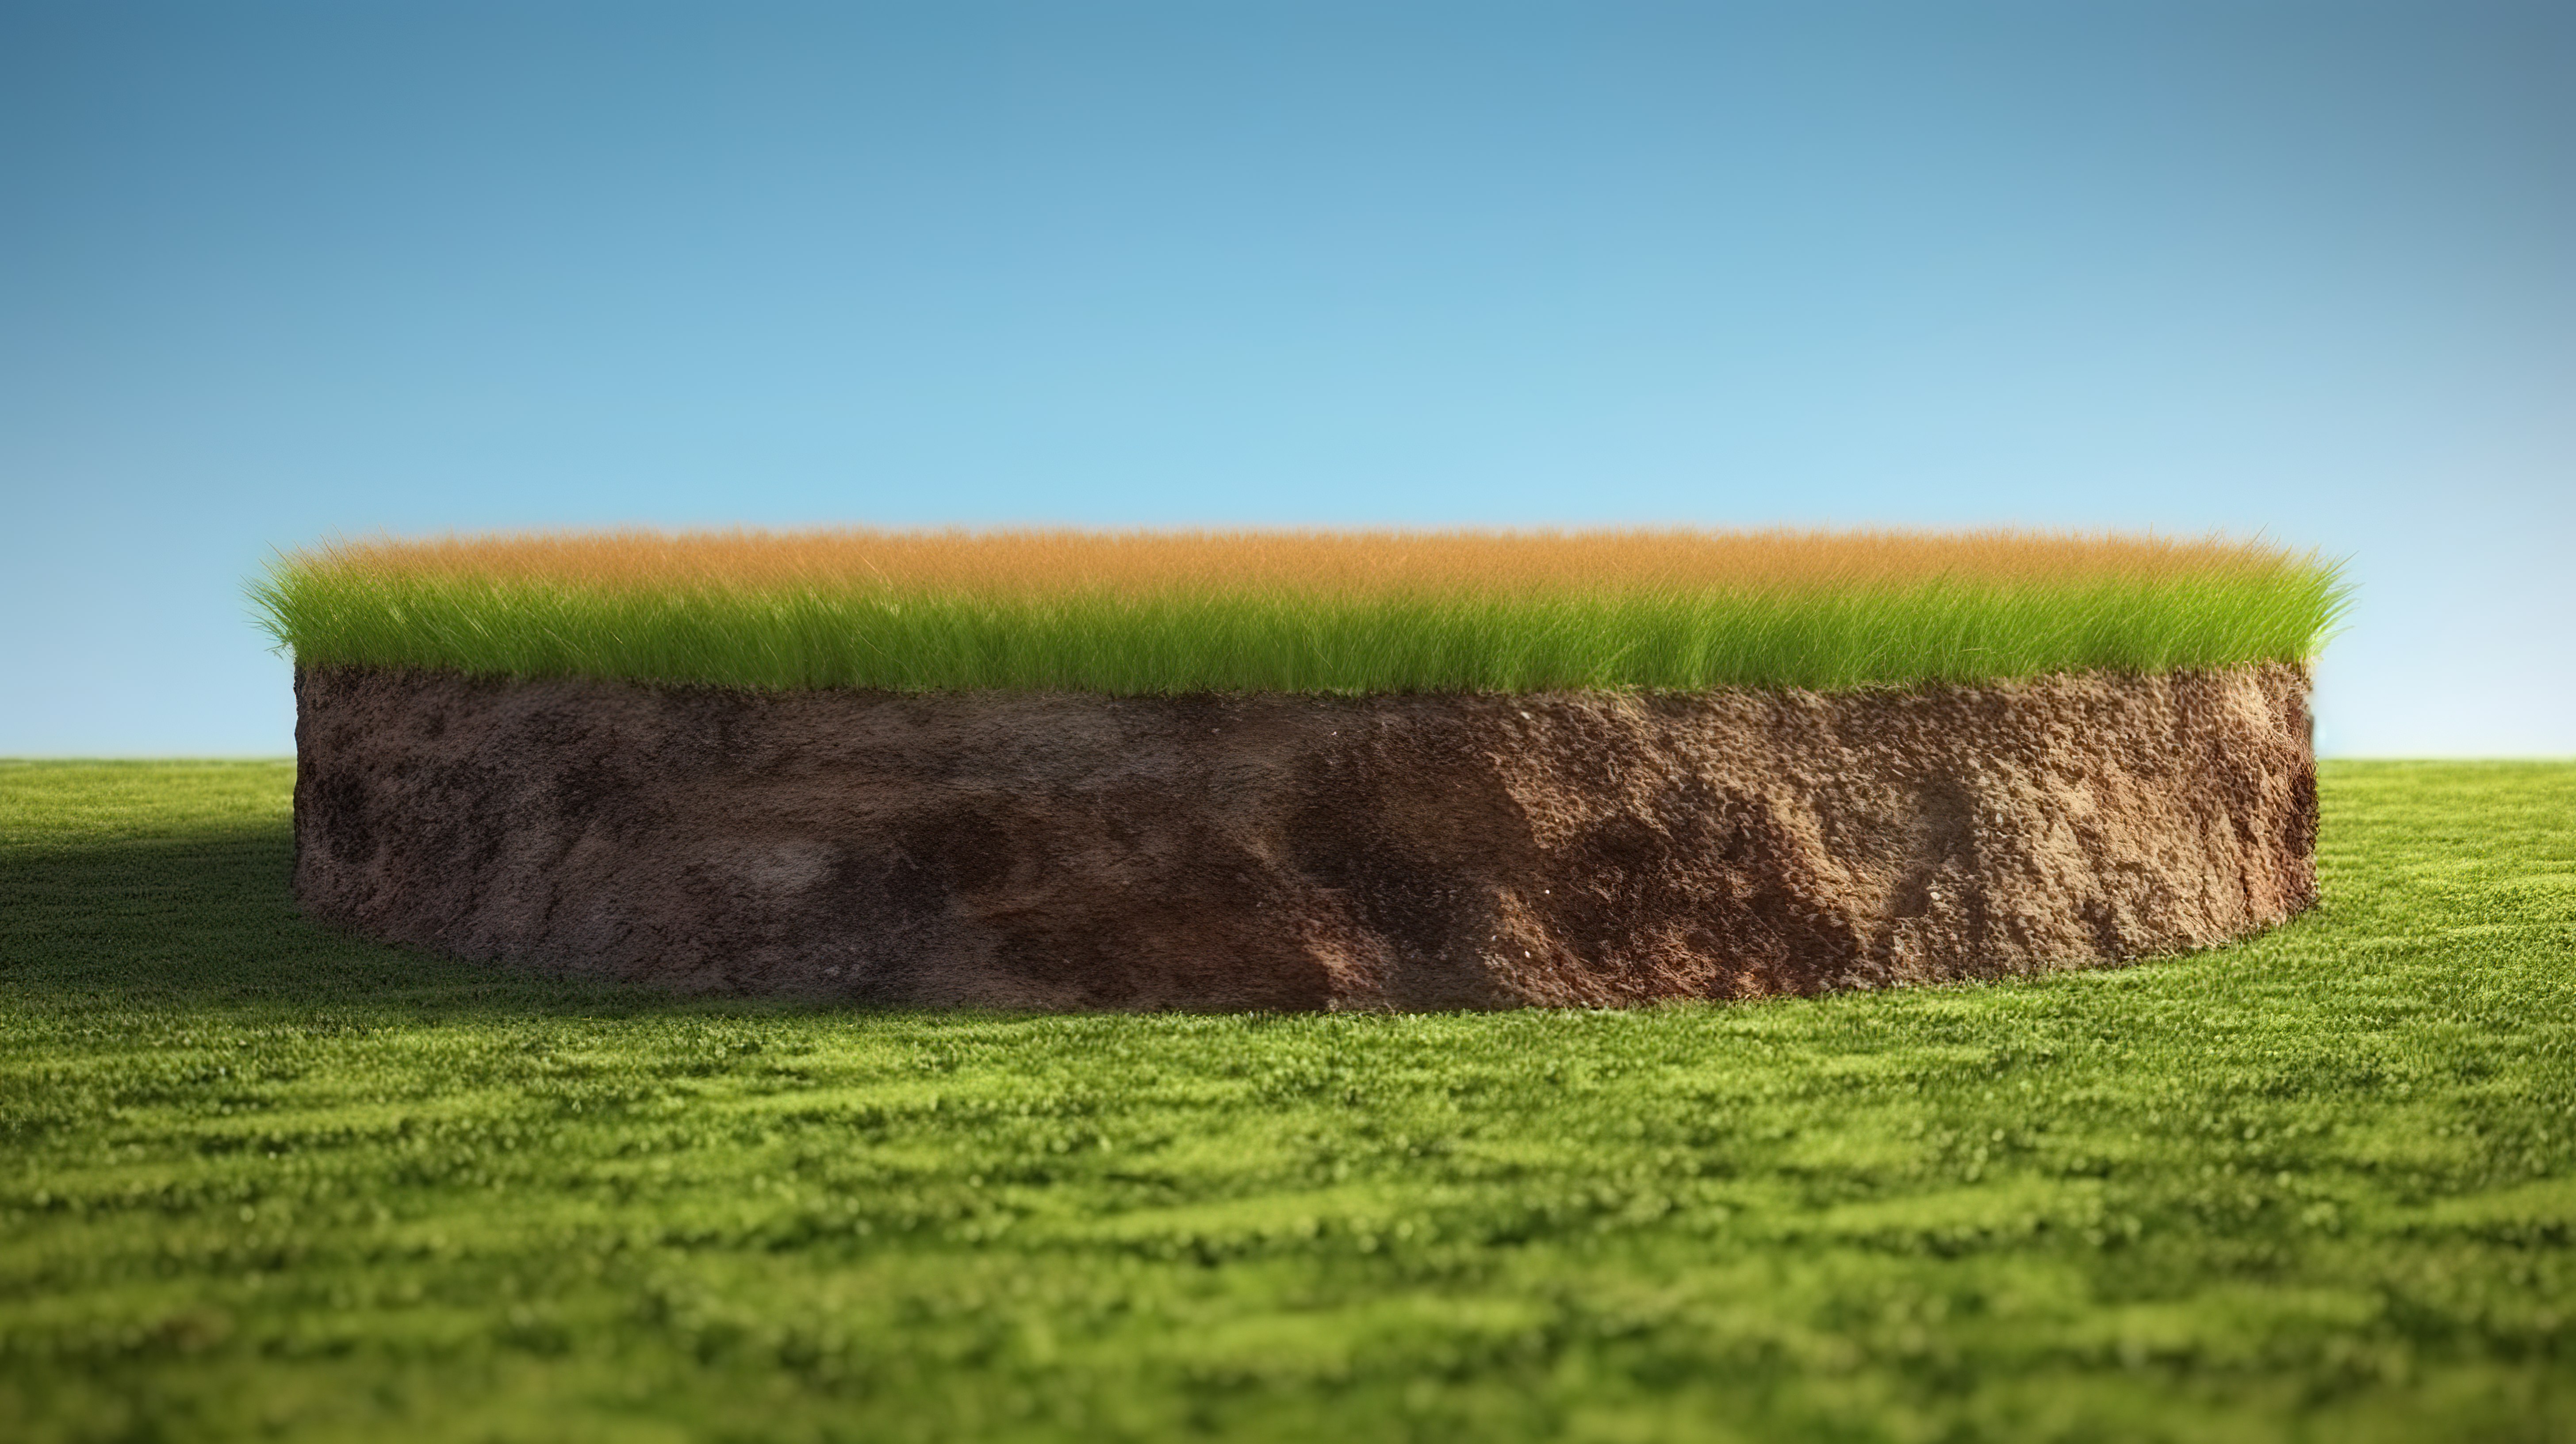 以 3D 形式描绘的草地讲台，在蓝天的背景下展示了郁郁葱葱的绿草的土壤横截面图片